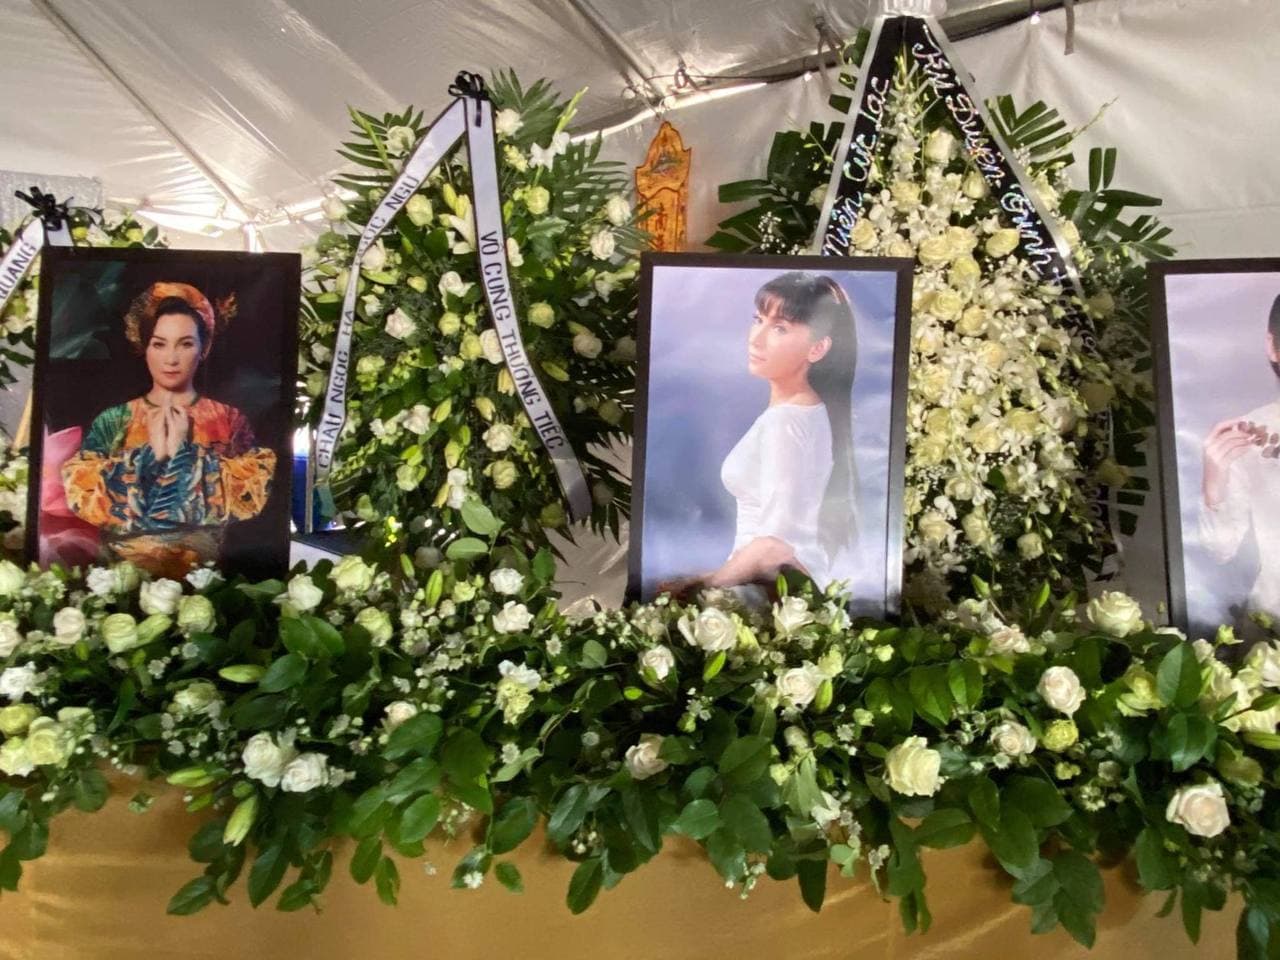 Đã có hàng ngàn đóa hoa gửi đến tang lễ Phi Nhung hôm nay.